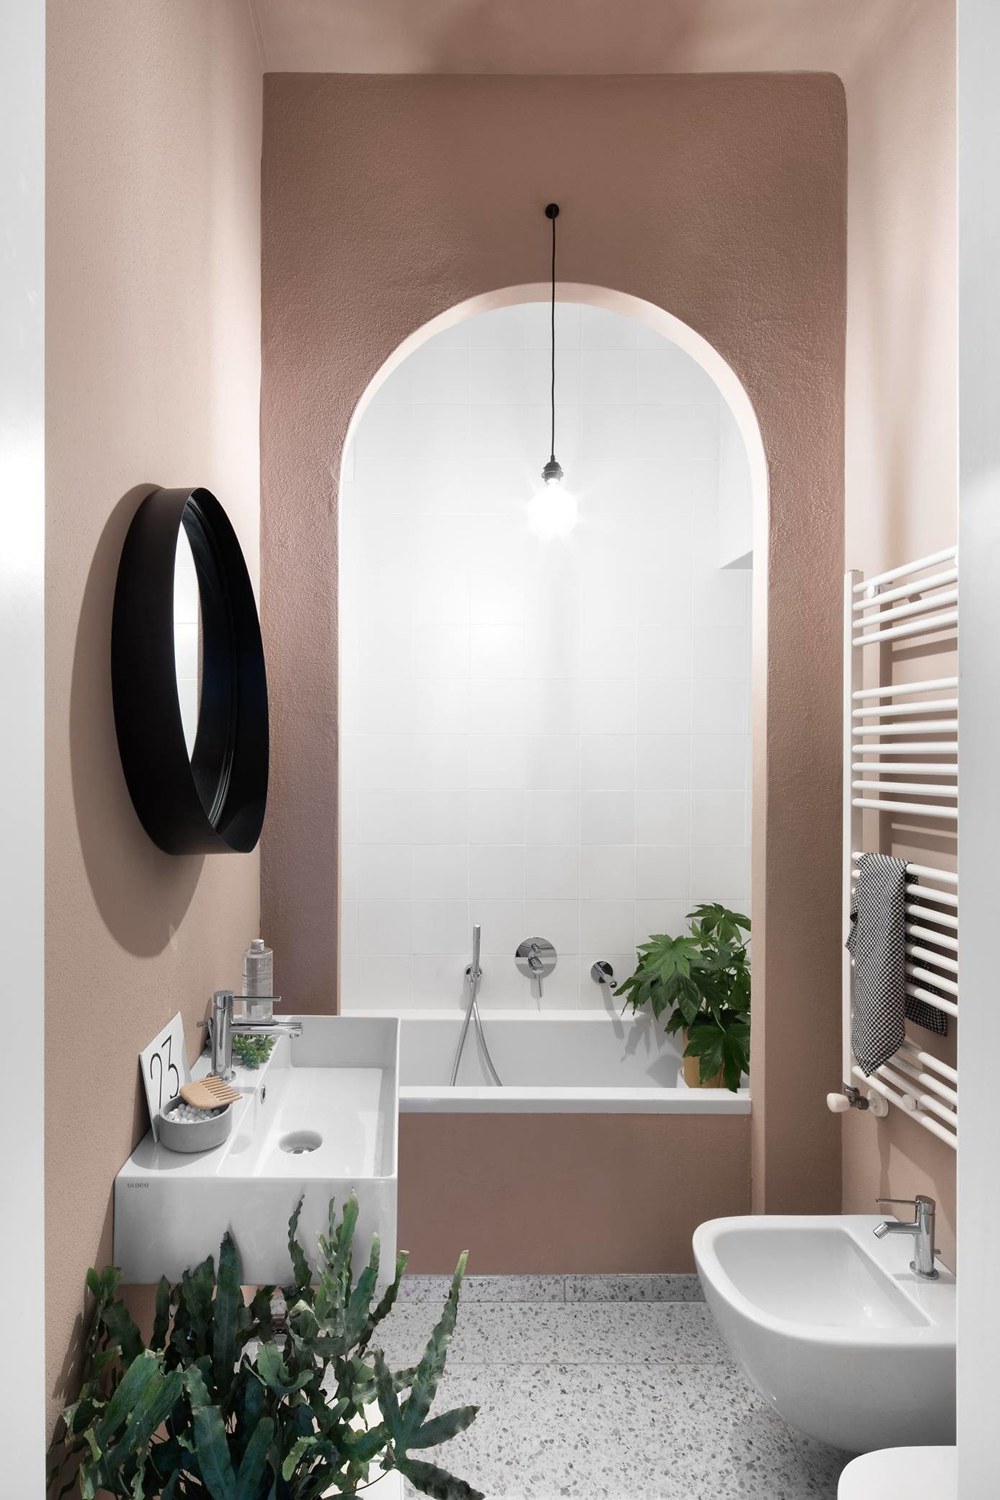 卫浴空间整体以粉色为背景，搭配白色洁具，令空间弥漫着雅致的气息。